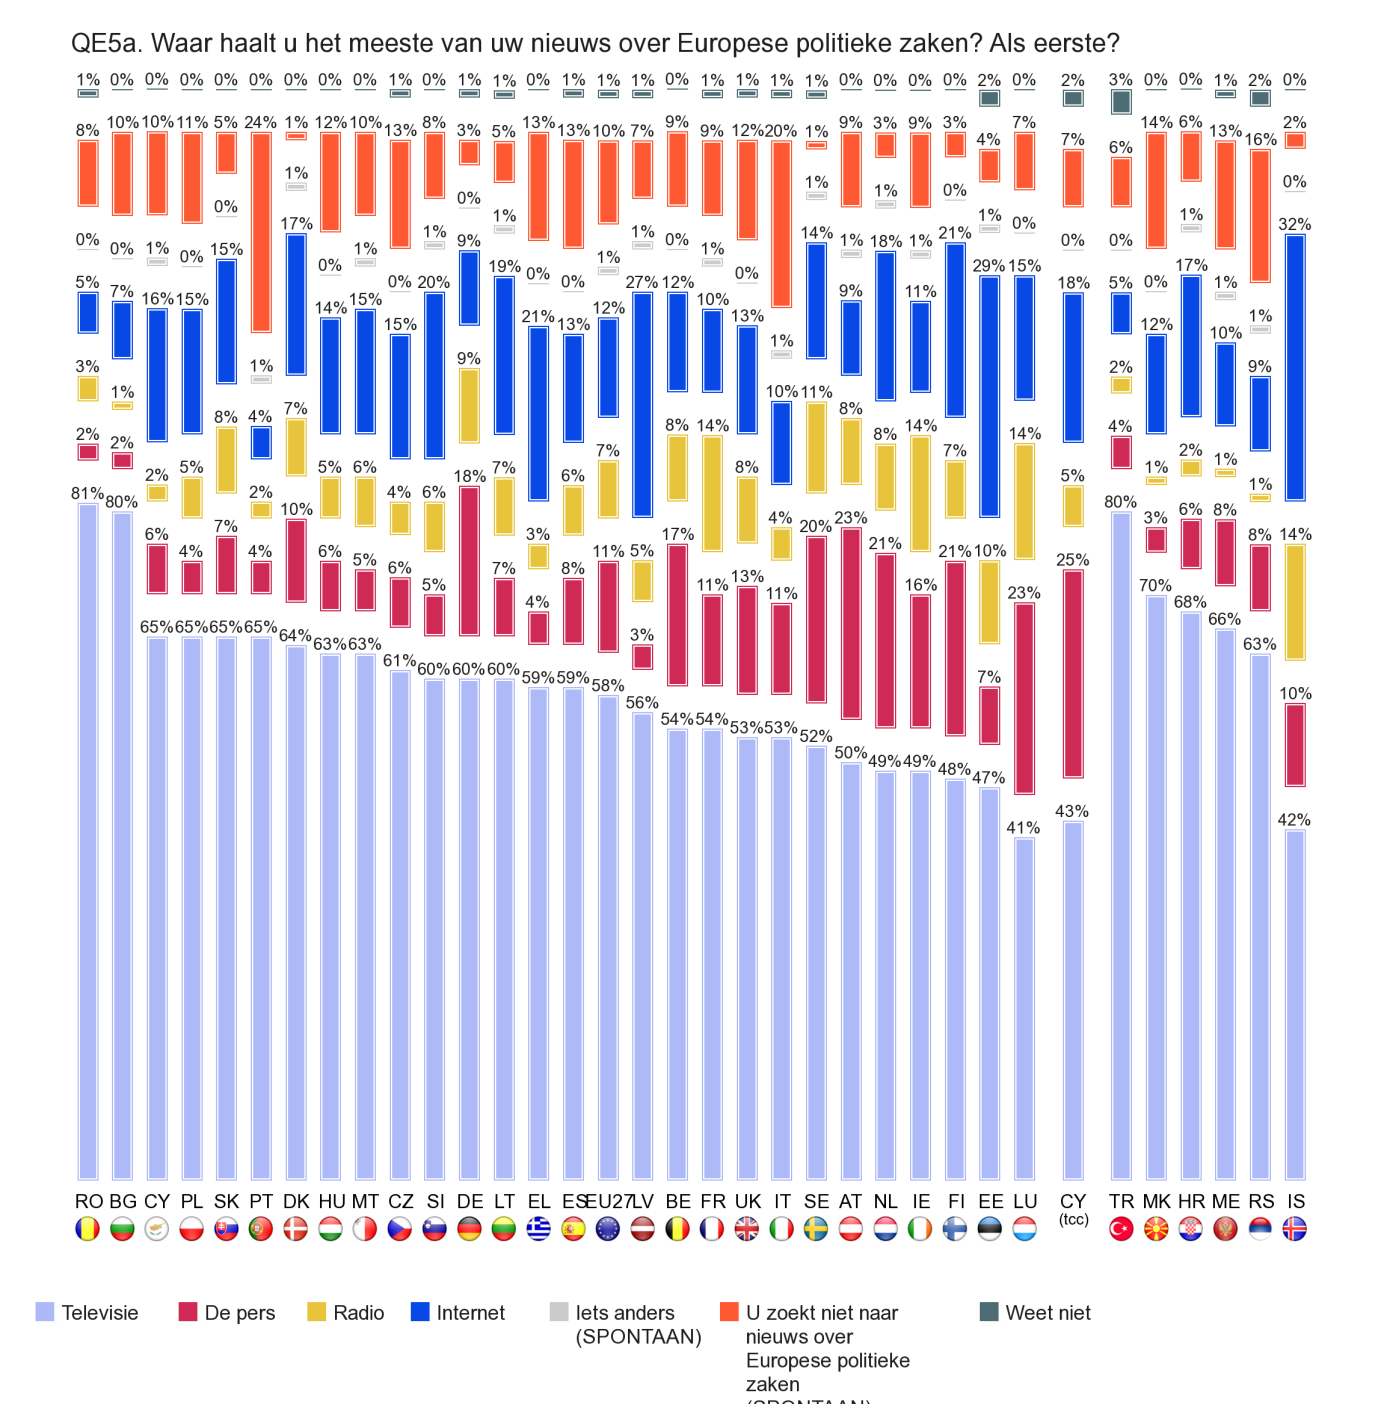 Onderstaande grafiek geeft aan van welke informatiebronnen de inwoners van de lidstaten het meest gebruik maken om aan informatie te komen over Europese politiek.